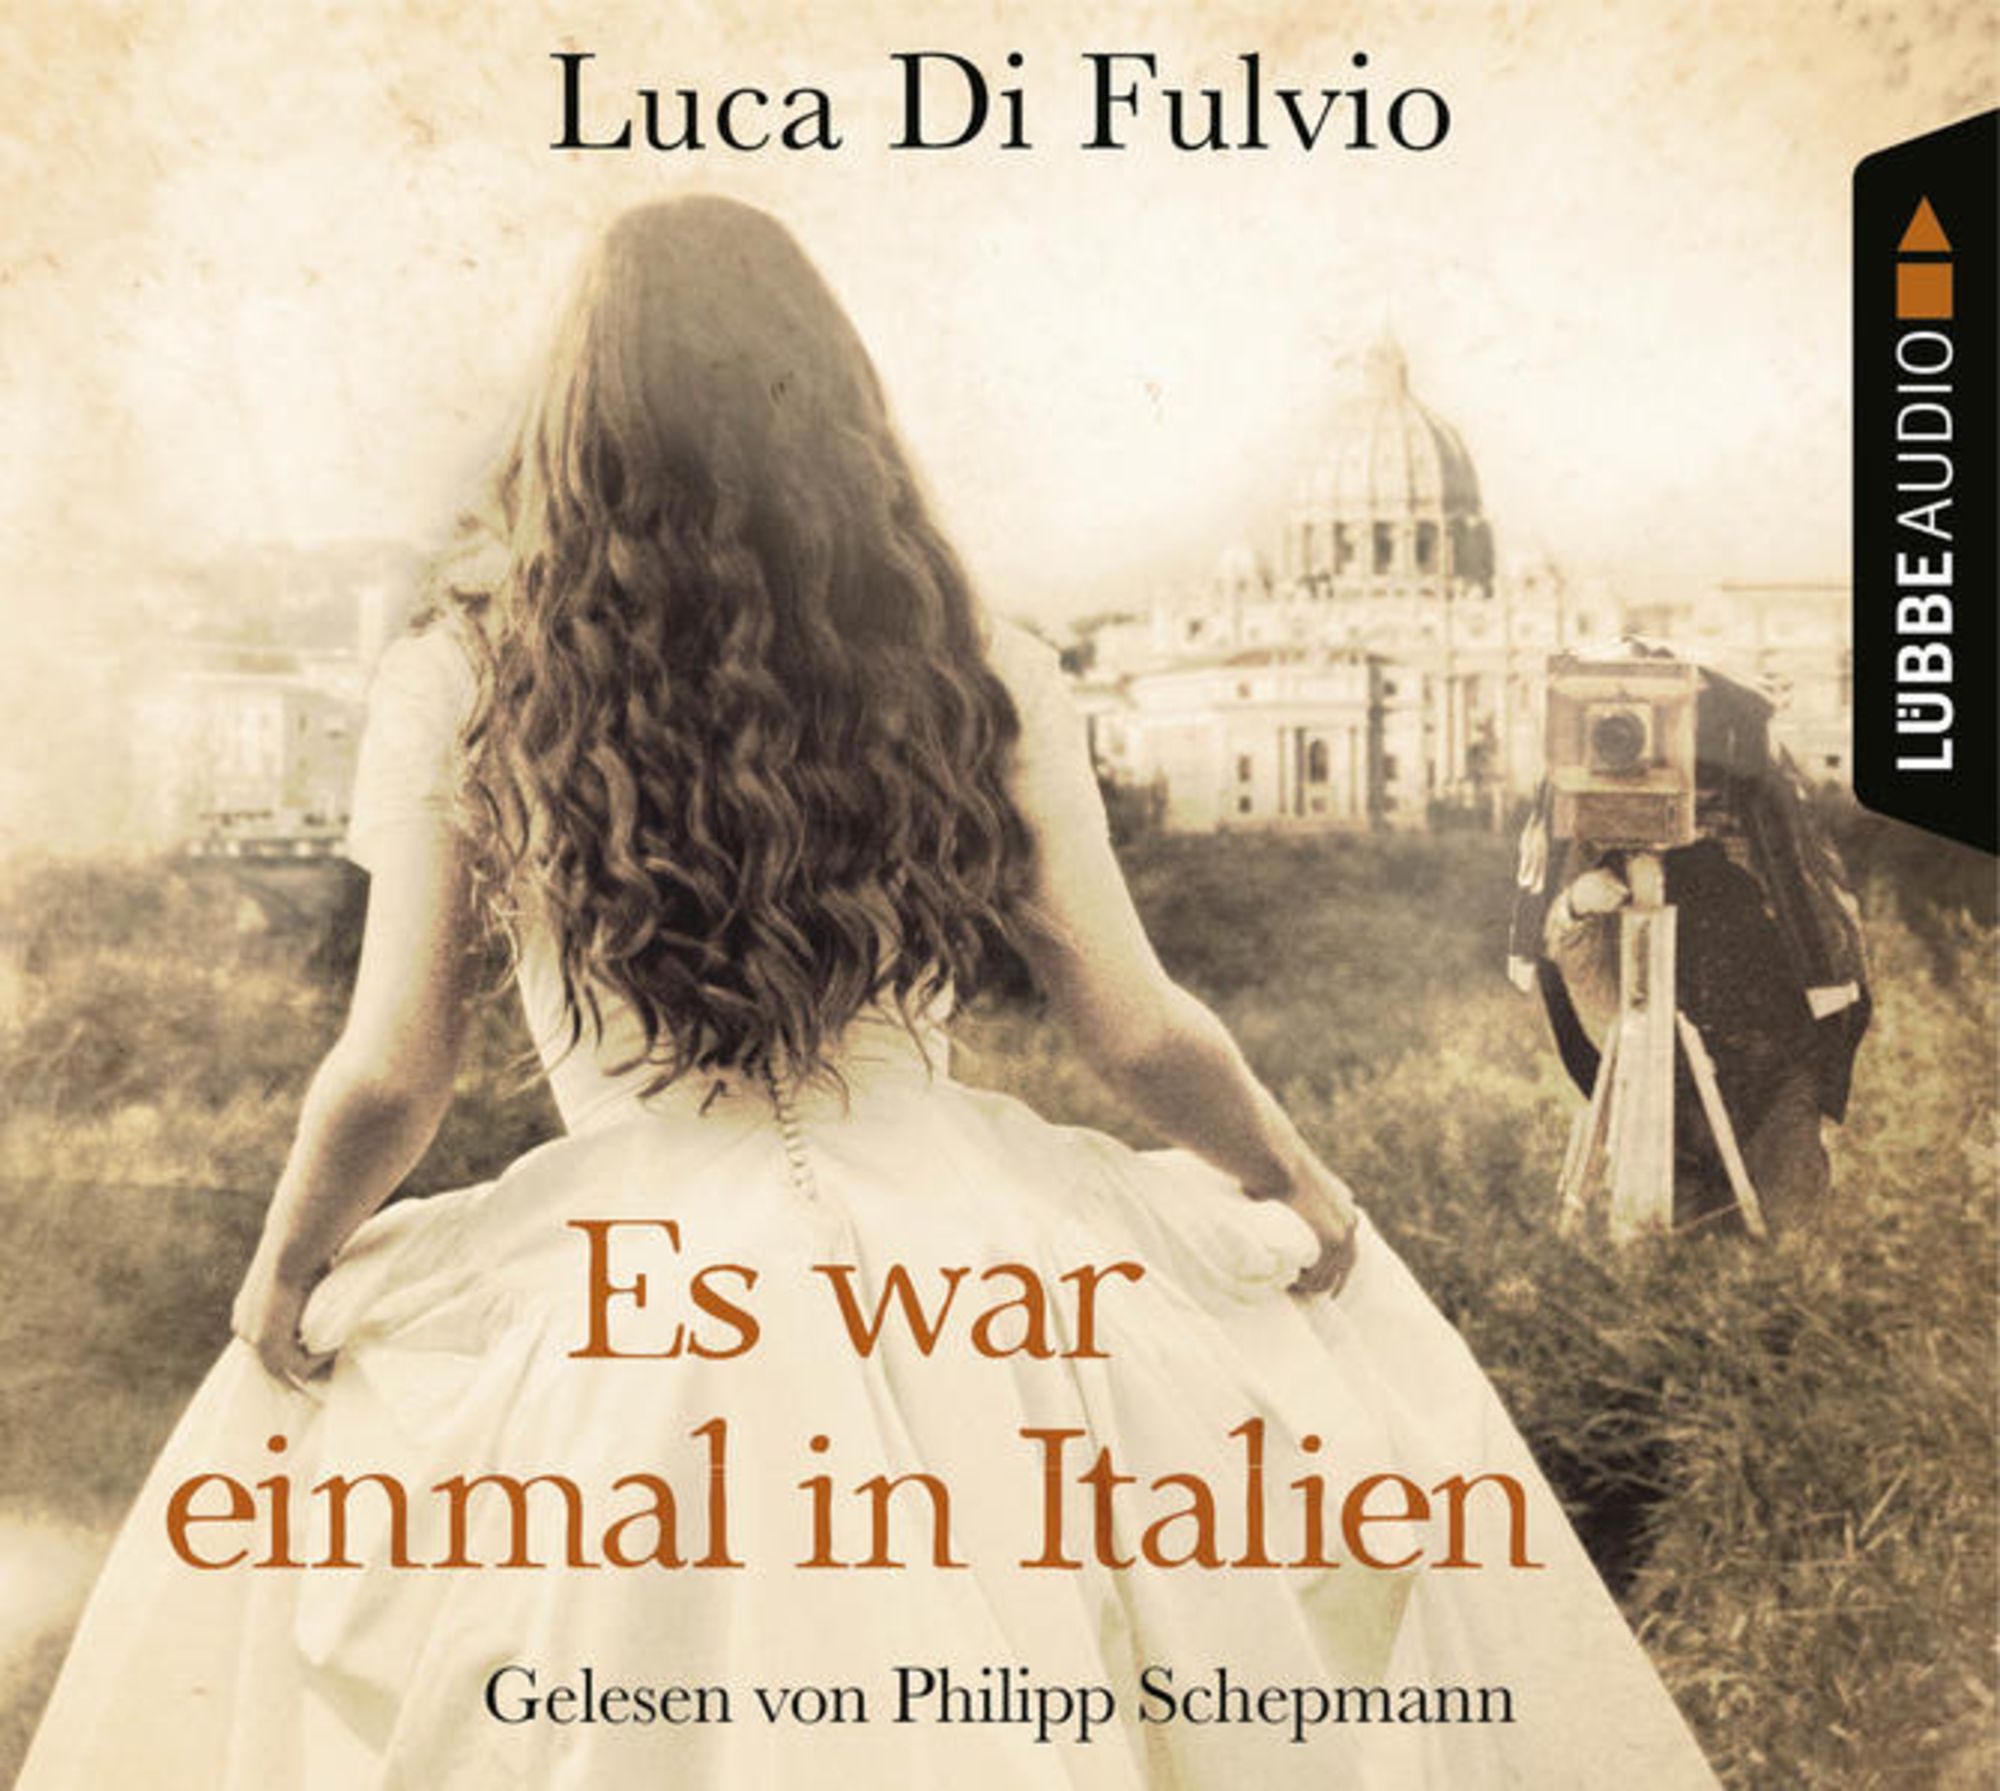 Es war einmal in Italien' von 'Luca Di Fulvio' - Hörbuch-Download